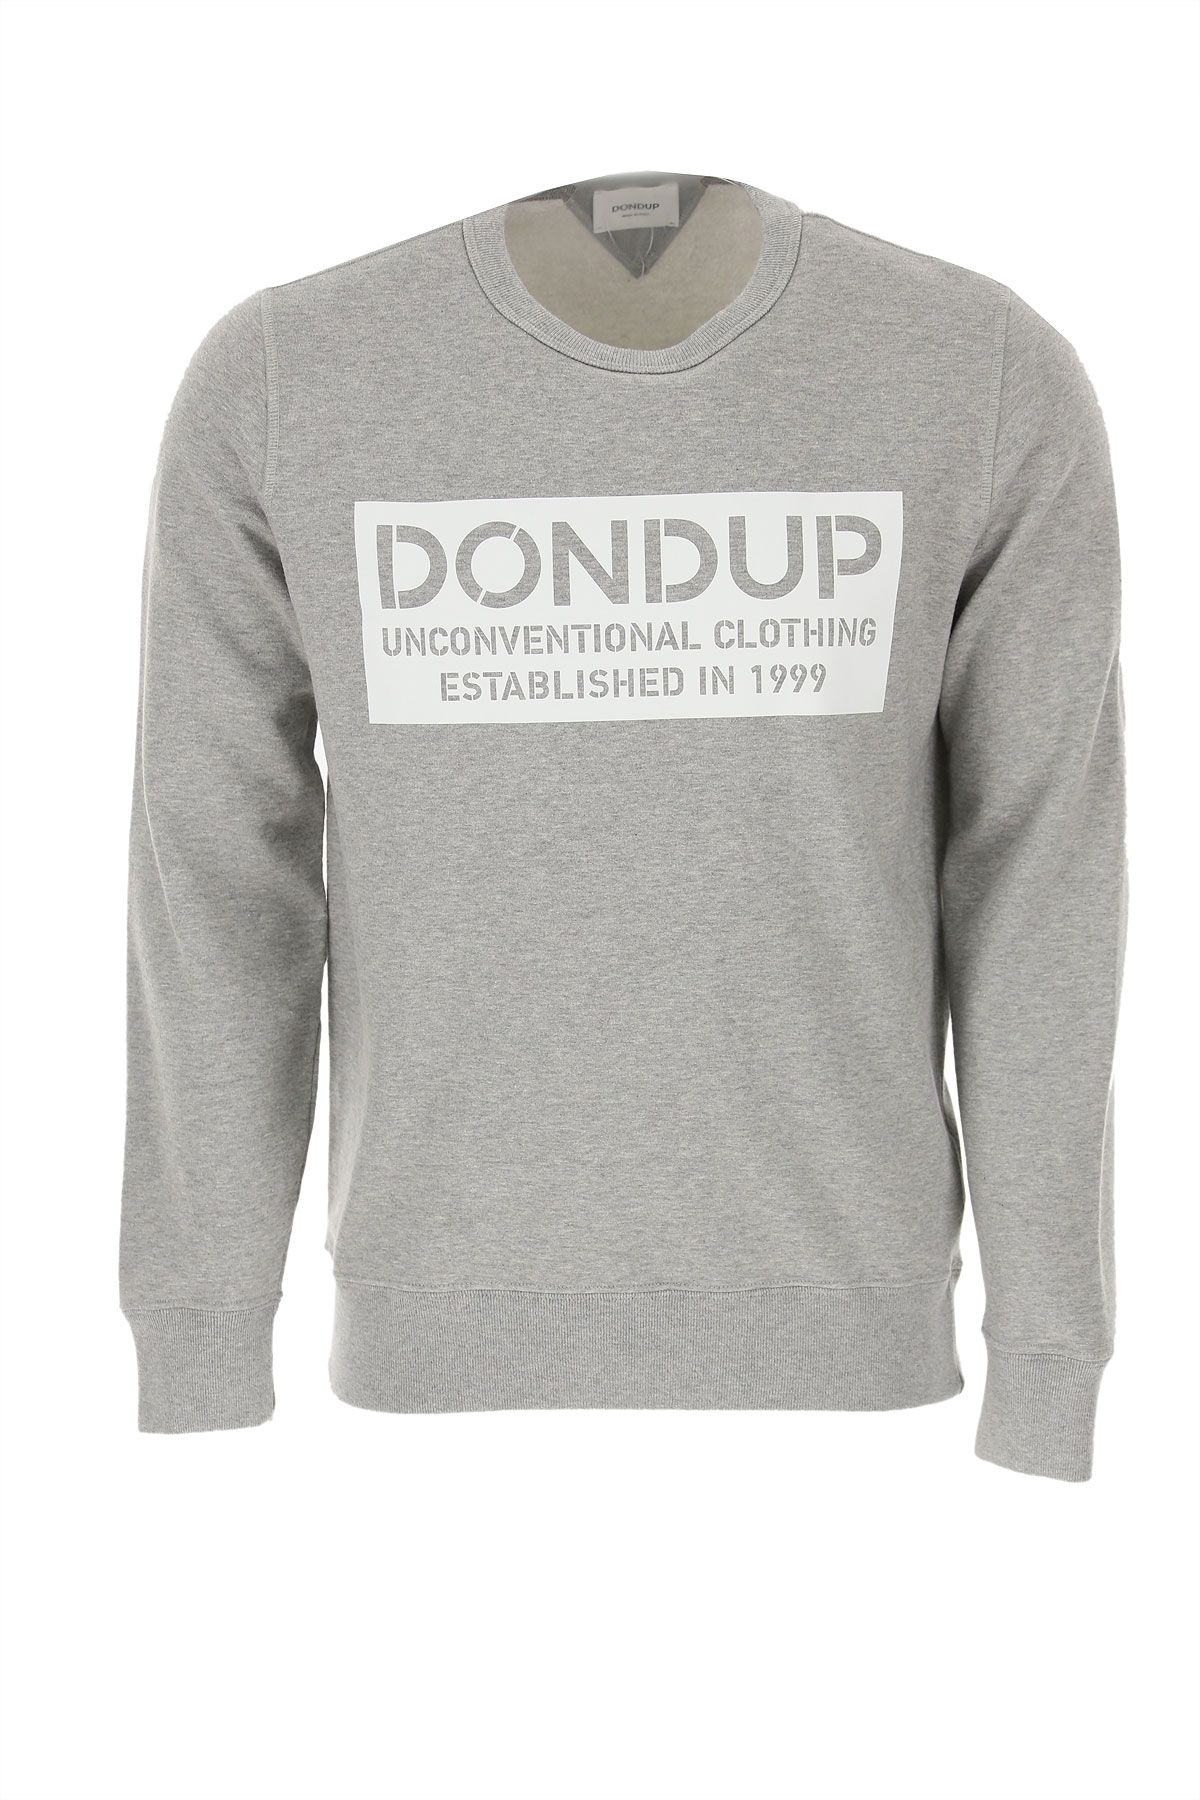 Dondup Sweatshirt für Herren, Kapuzenpulli, Hoodie, Sweats Günstig im Sale, Grau, Baumwolle, 2017, L XL